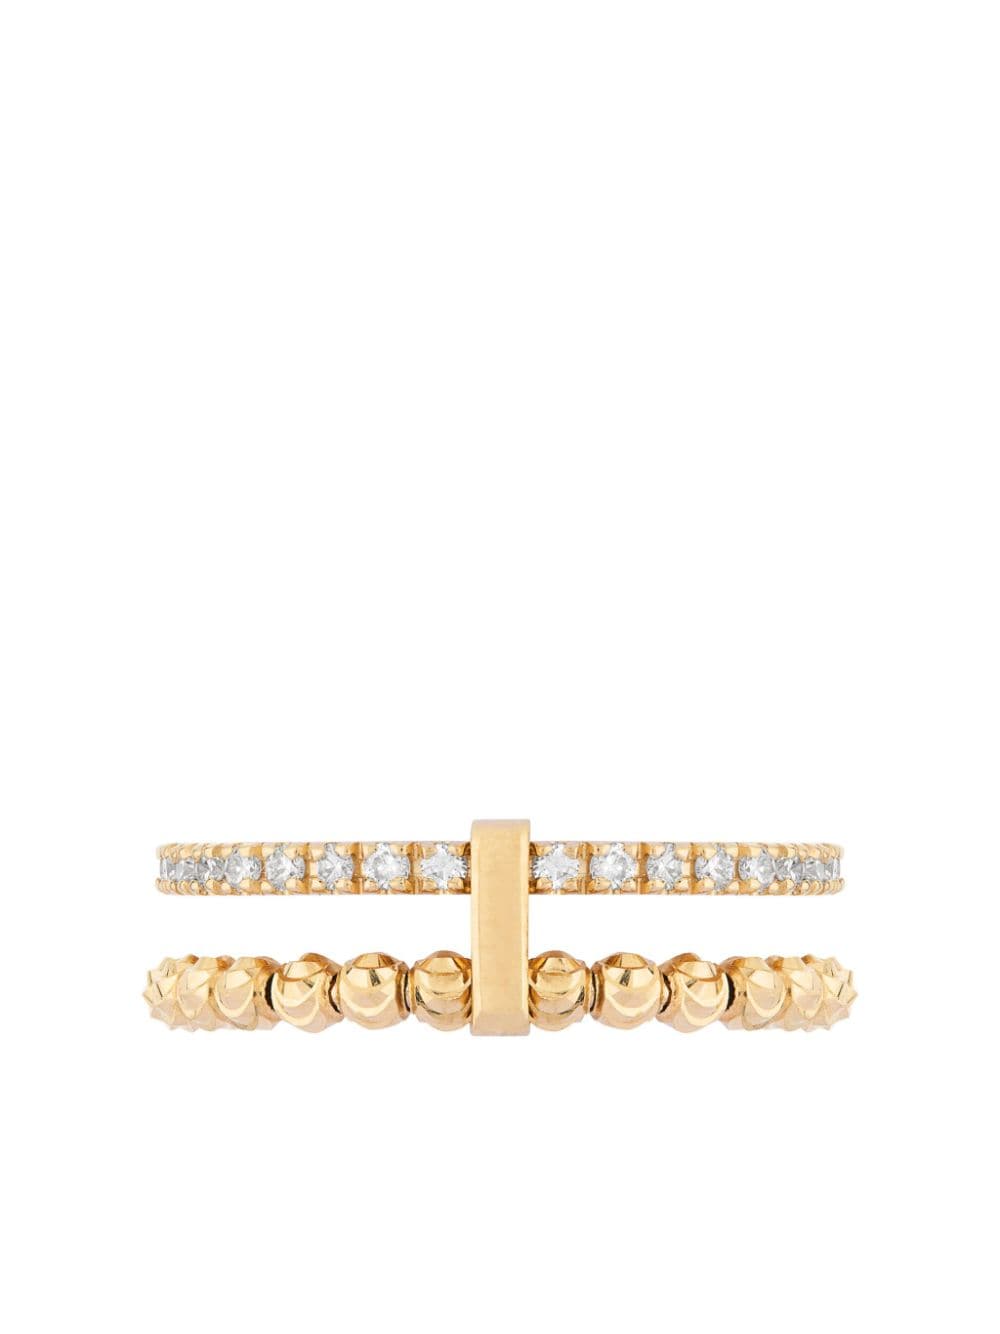 Shop Officina Bernardi 18kt Yellow Gold Moon Eden Diamond Ring